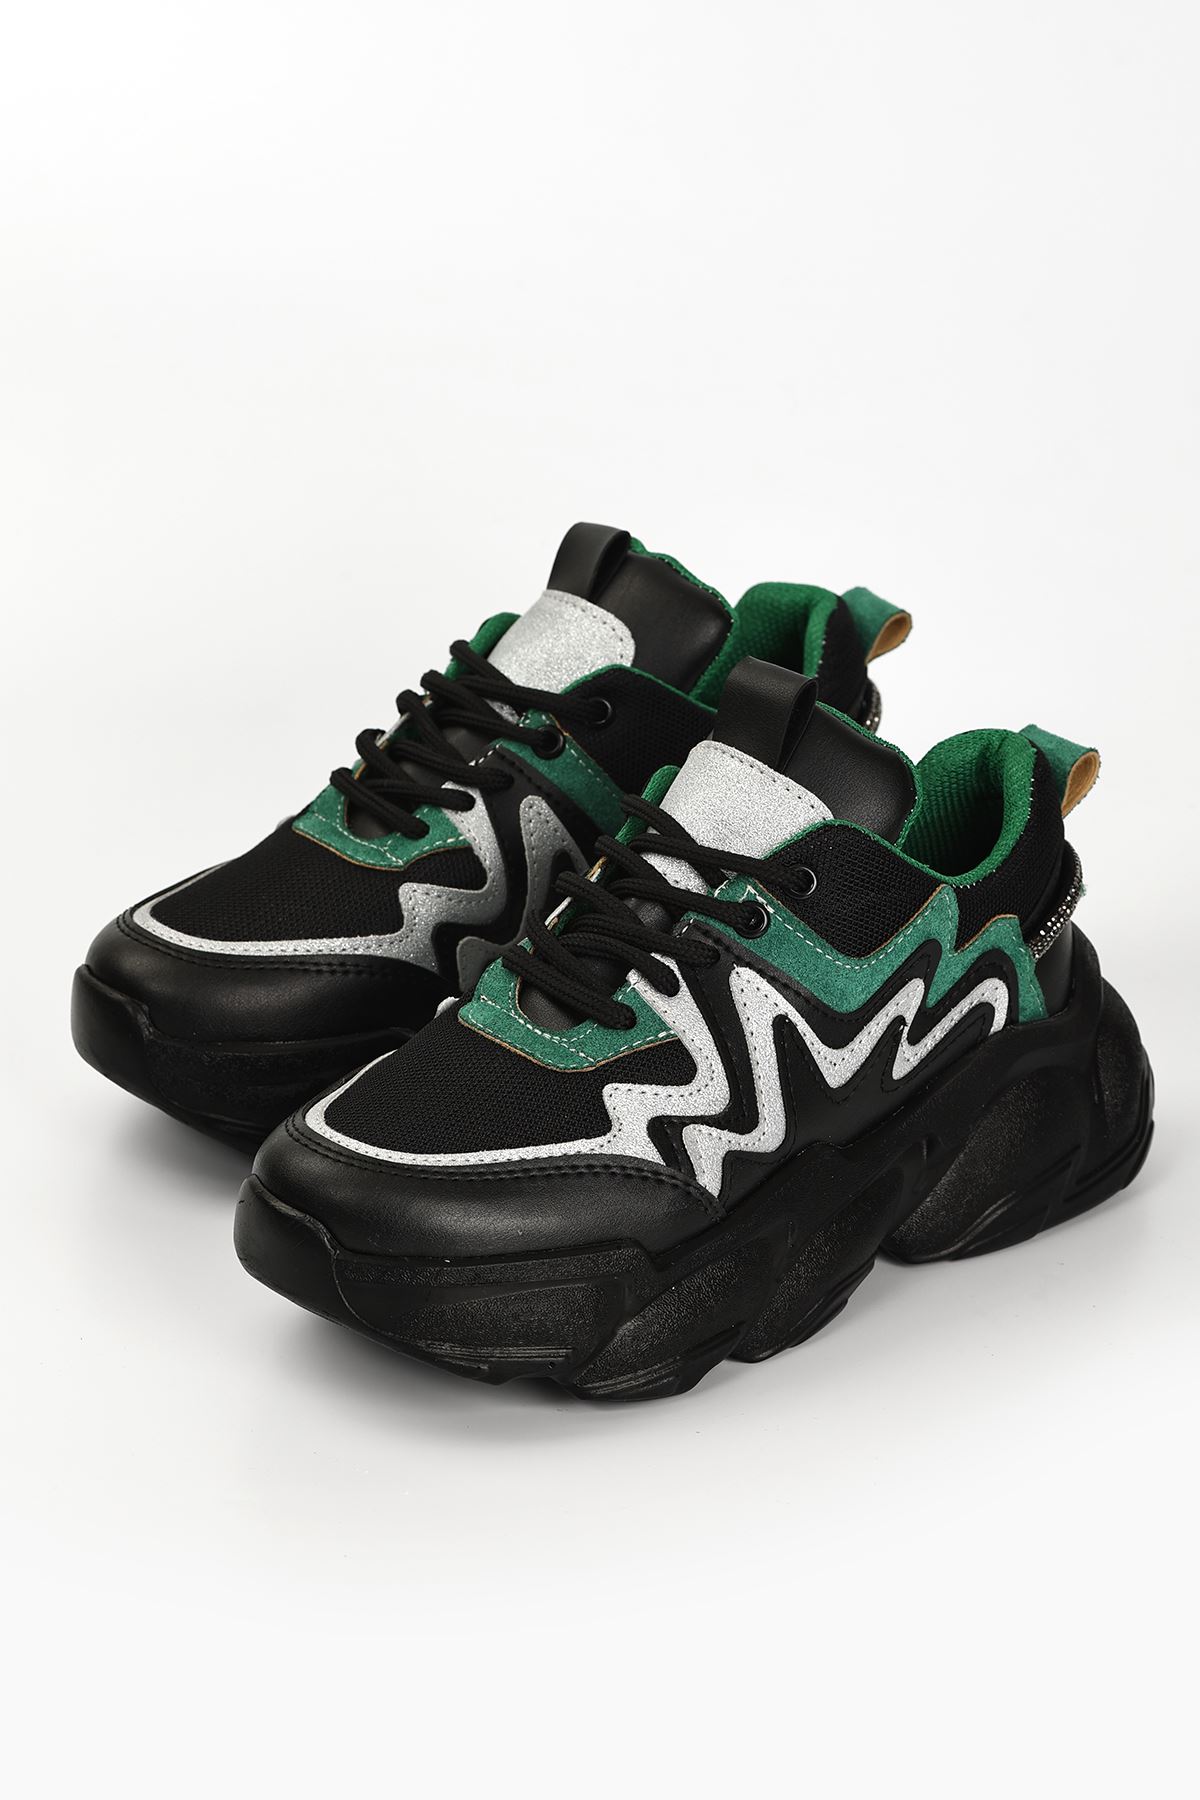 Osila Yeşil Parçalı Bağcık Detaylı Siyah Kadın Spor Ayakkabı